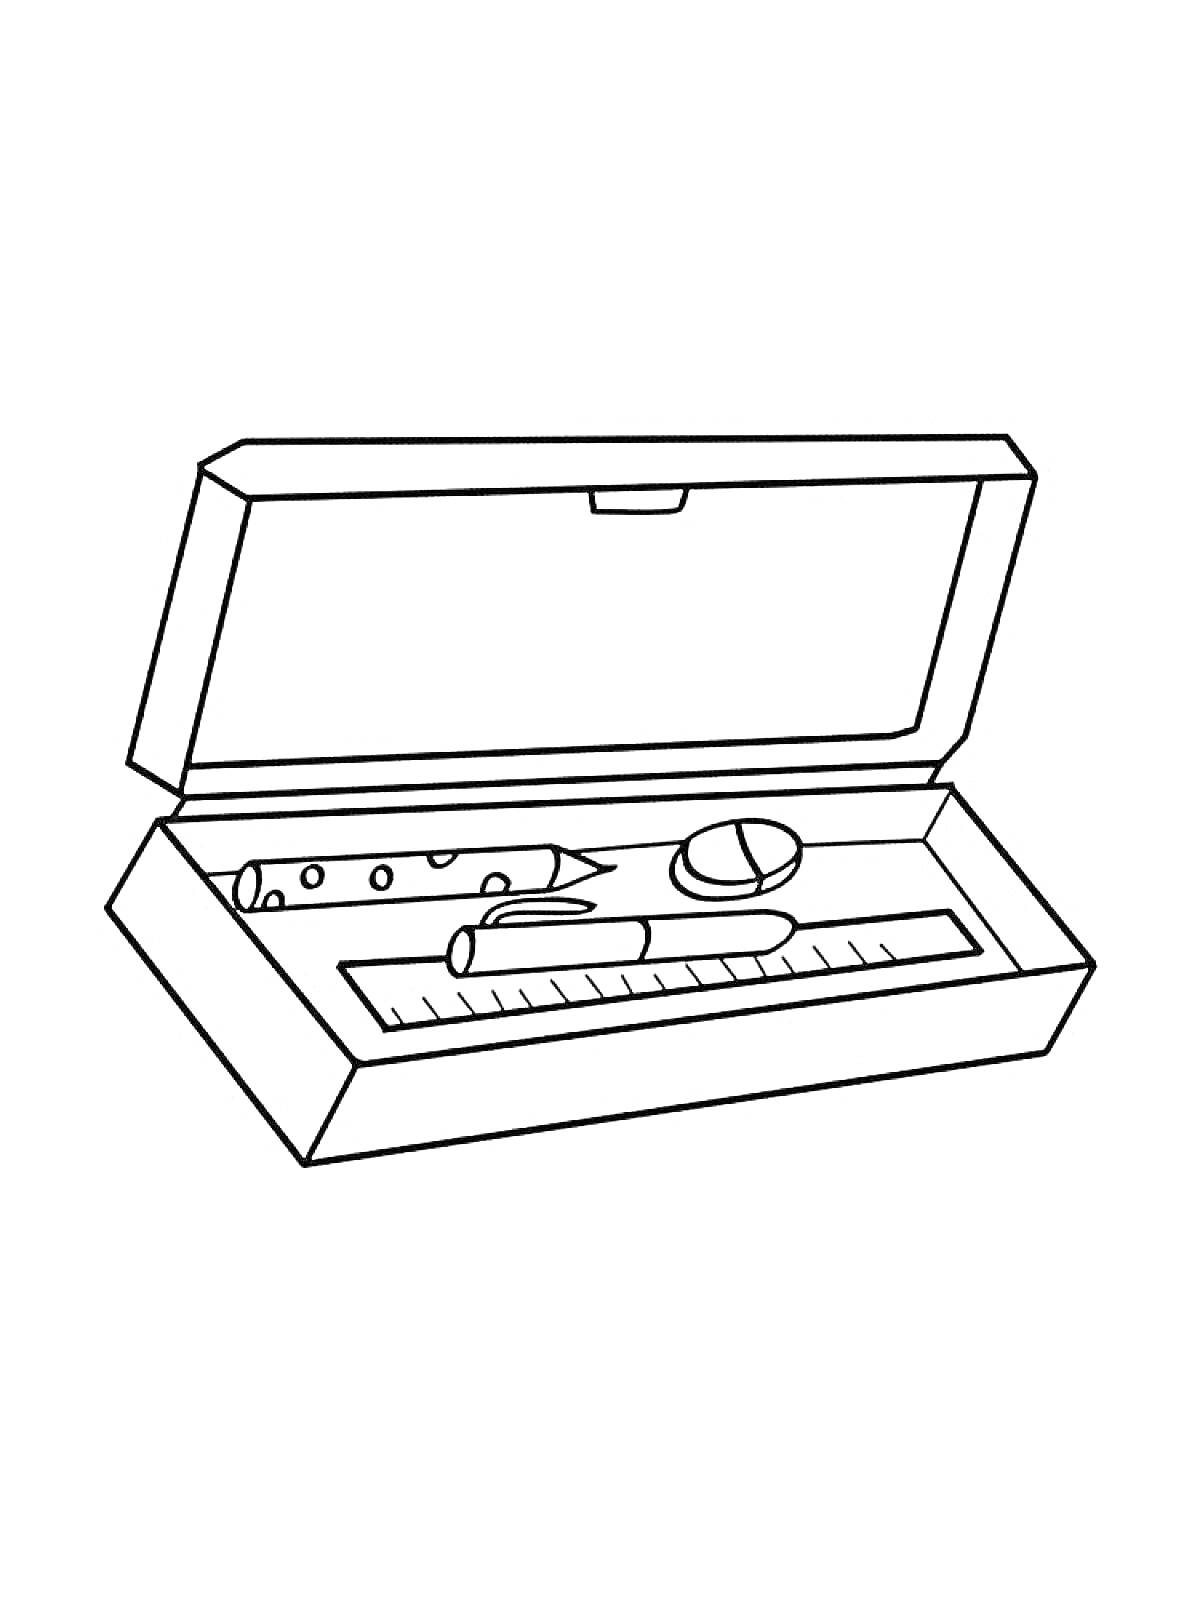 Пенал с открытой крышкой и элементами: фломастер, линейка, карандаш, ластик